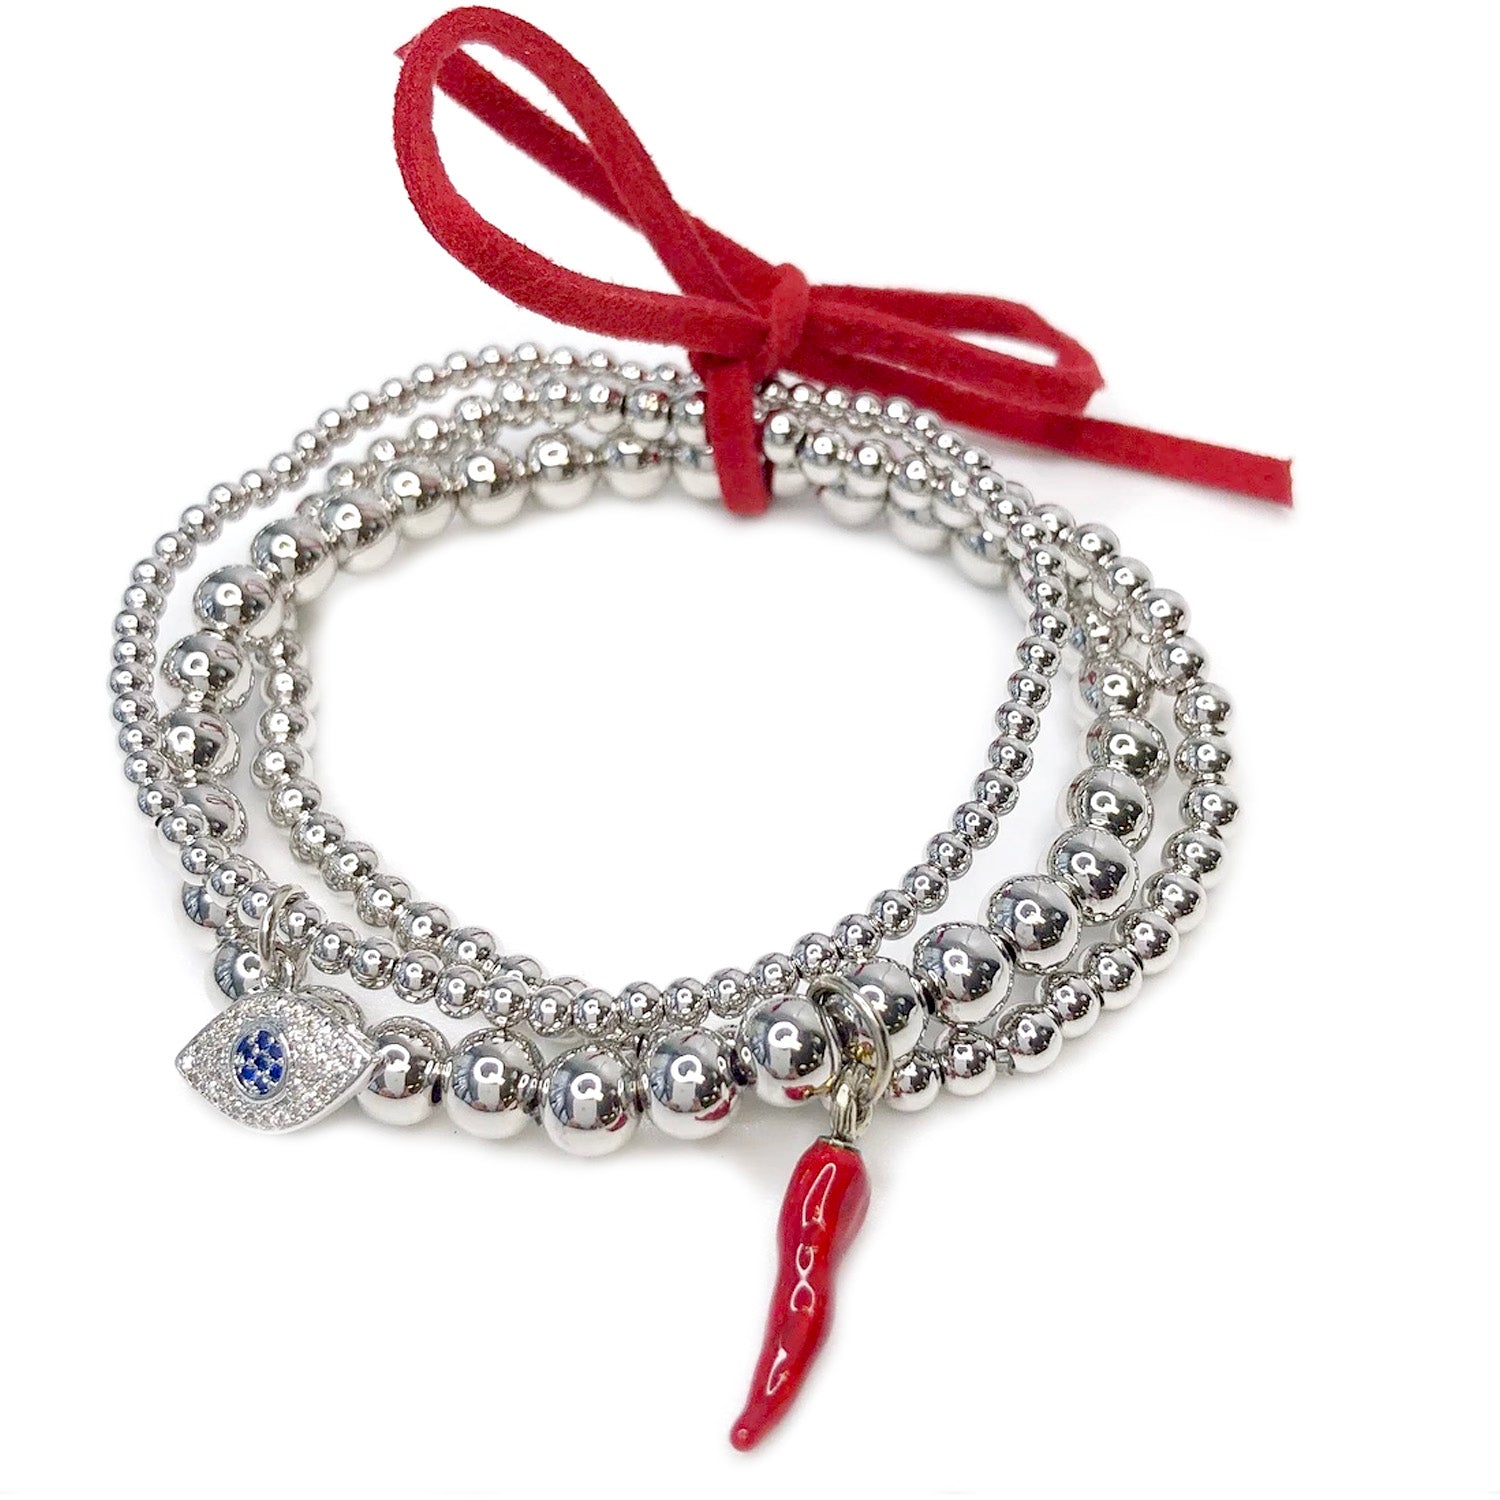 Calza silver bracelet - Italian jewelry - anka-jewellery.com